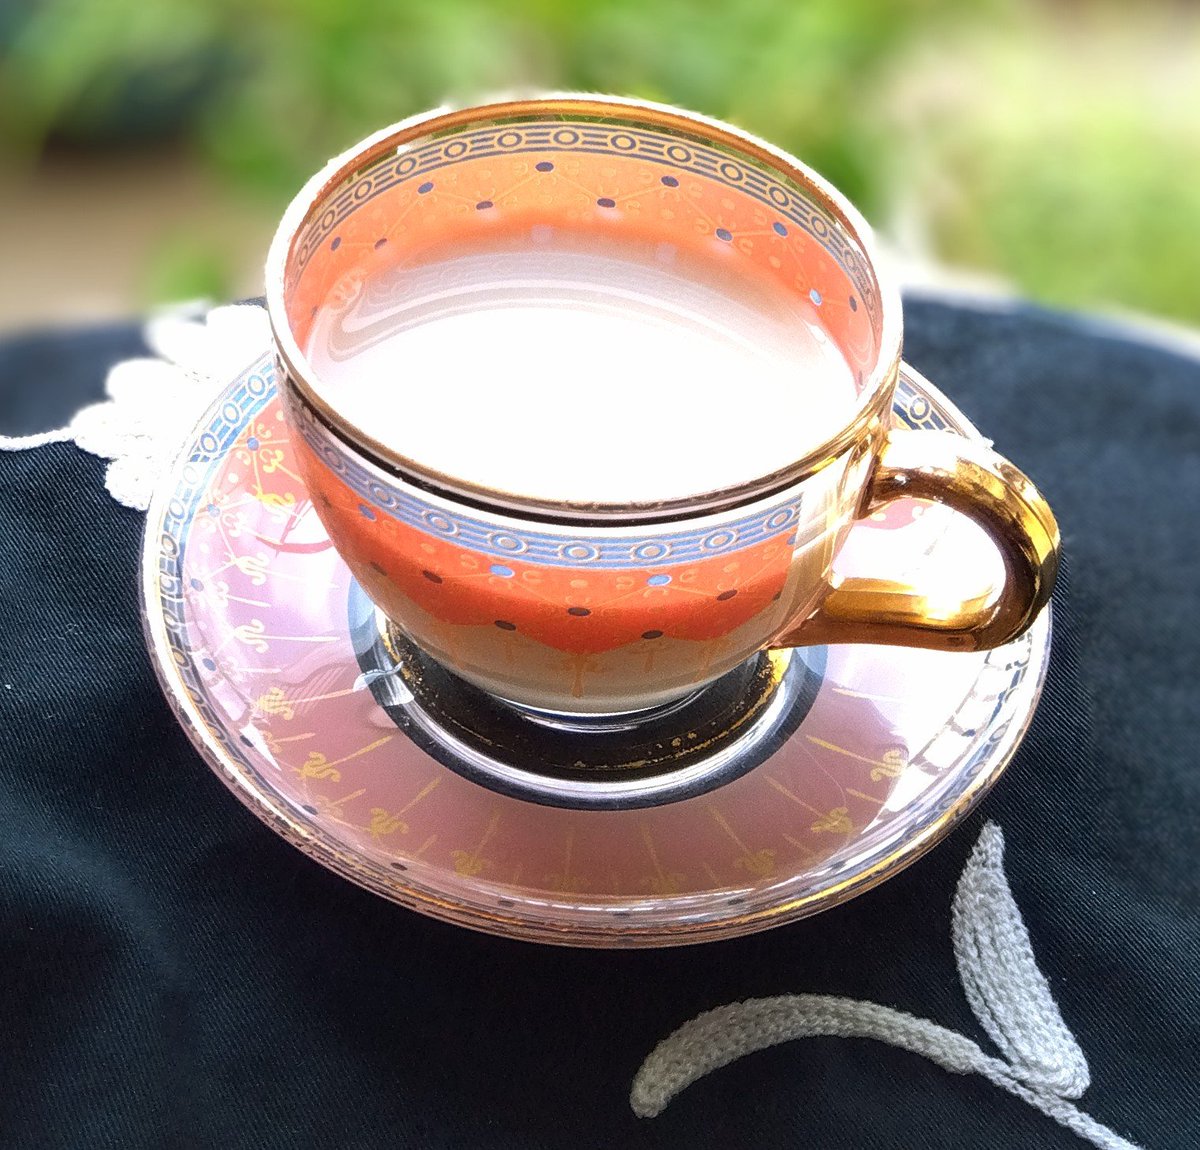 すっきり晴れた朝のお茶はミルクティー

アッサム種の紅玉日月潭紅茶
甘い果実の香りにミントっぽさもあるね

#茶好連 
#木漏れ日のお茶会